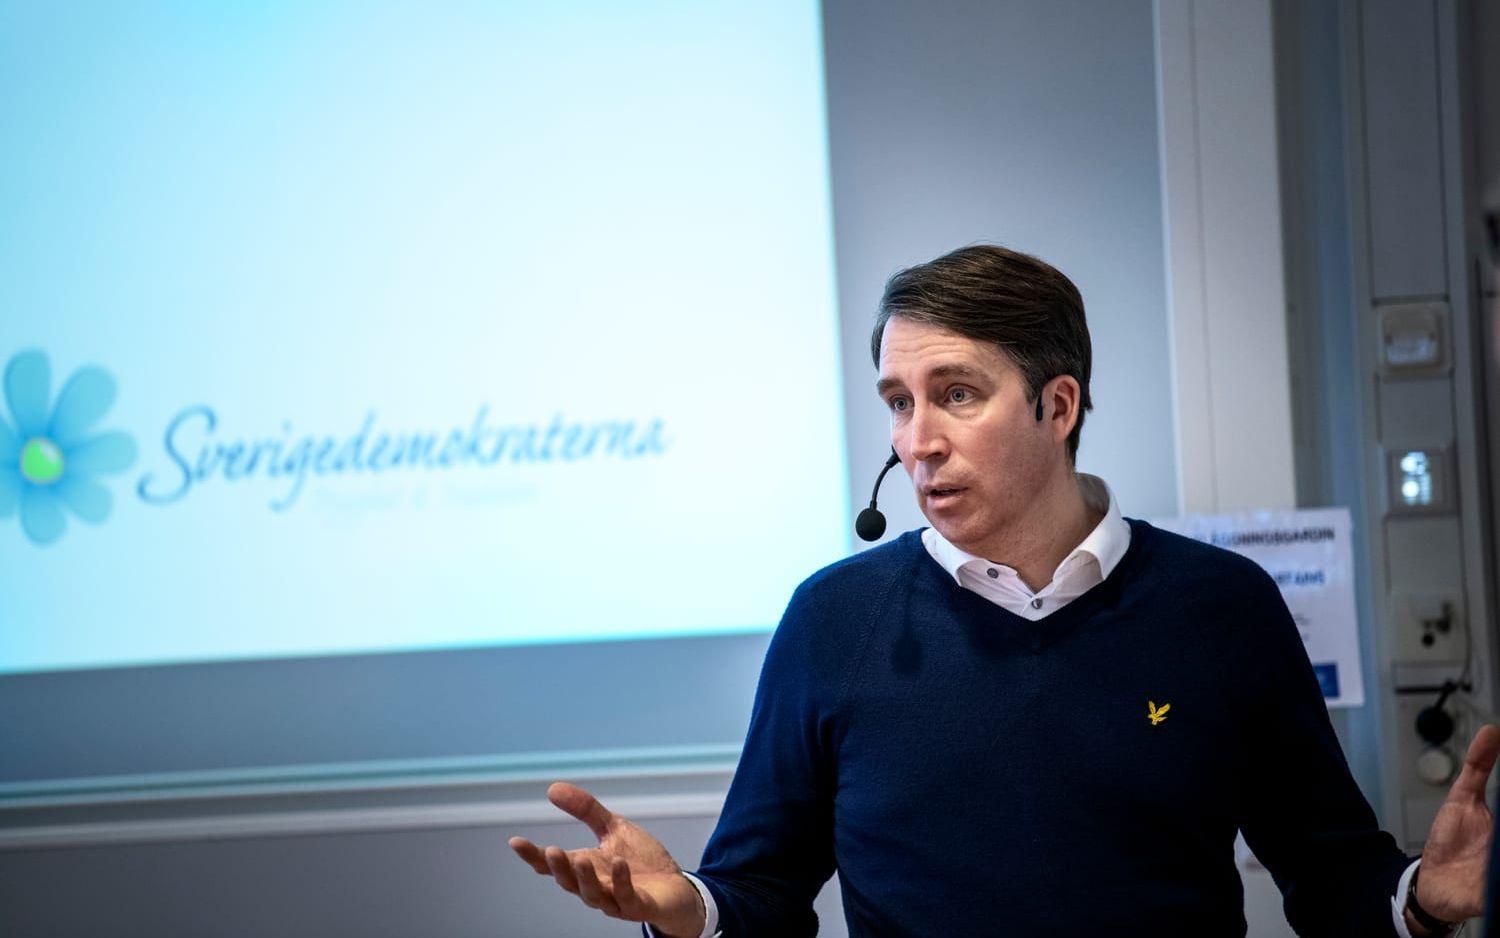 SD:s partisekreterare Richard Jomshof berättade om partiets strategier för att nå ut på Göteborgs universitet.